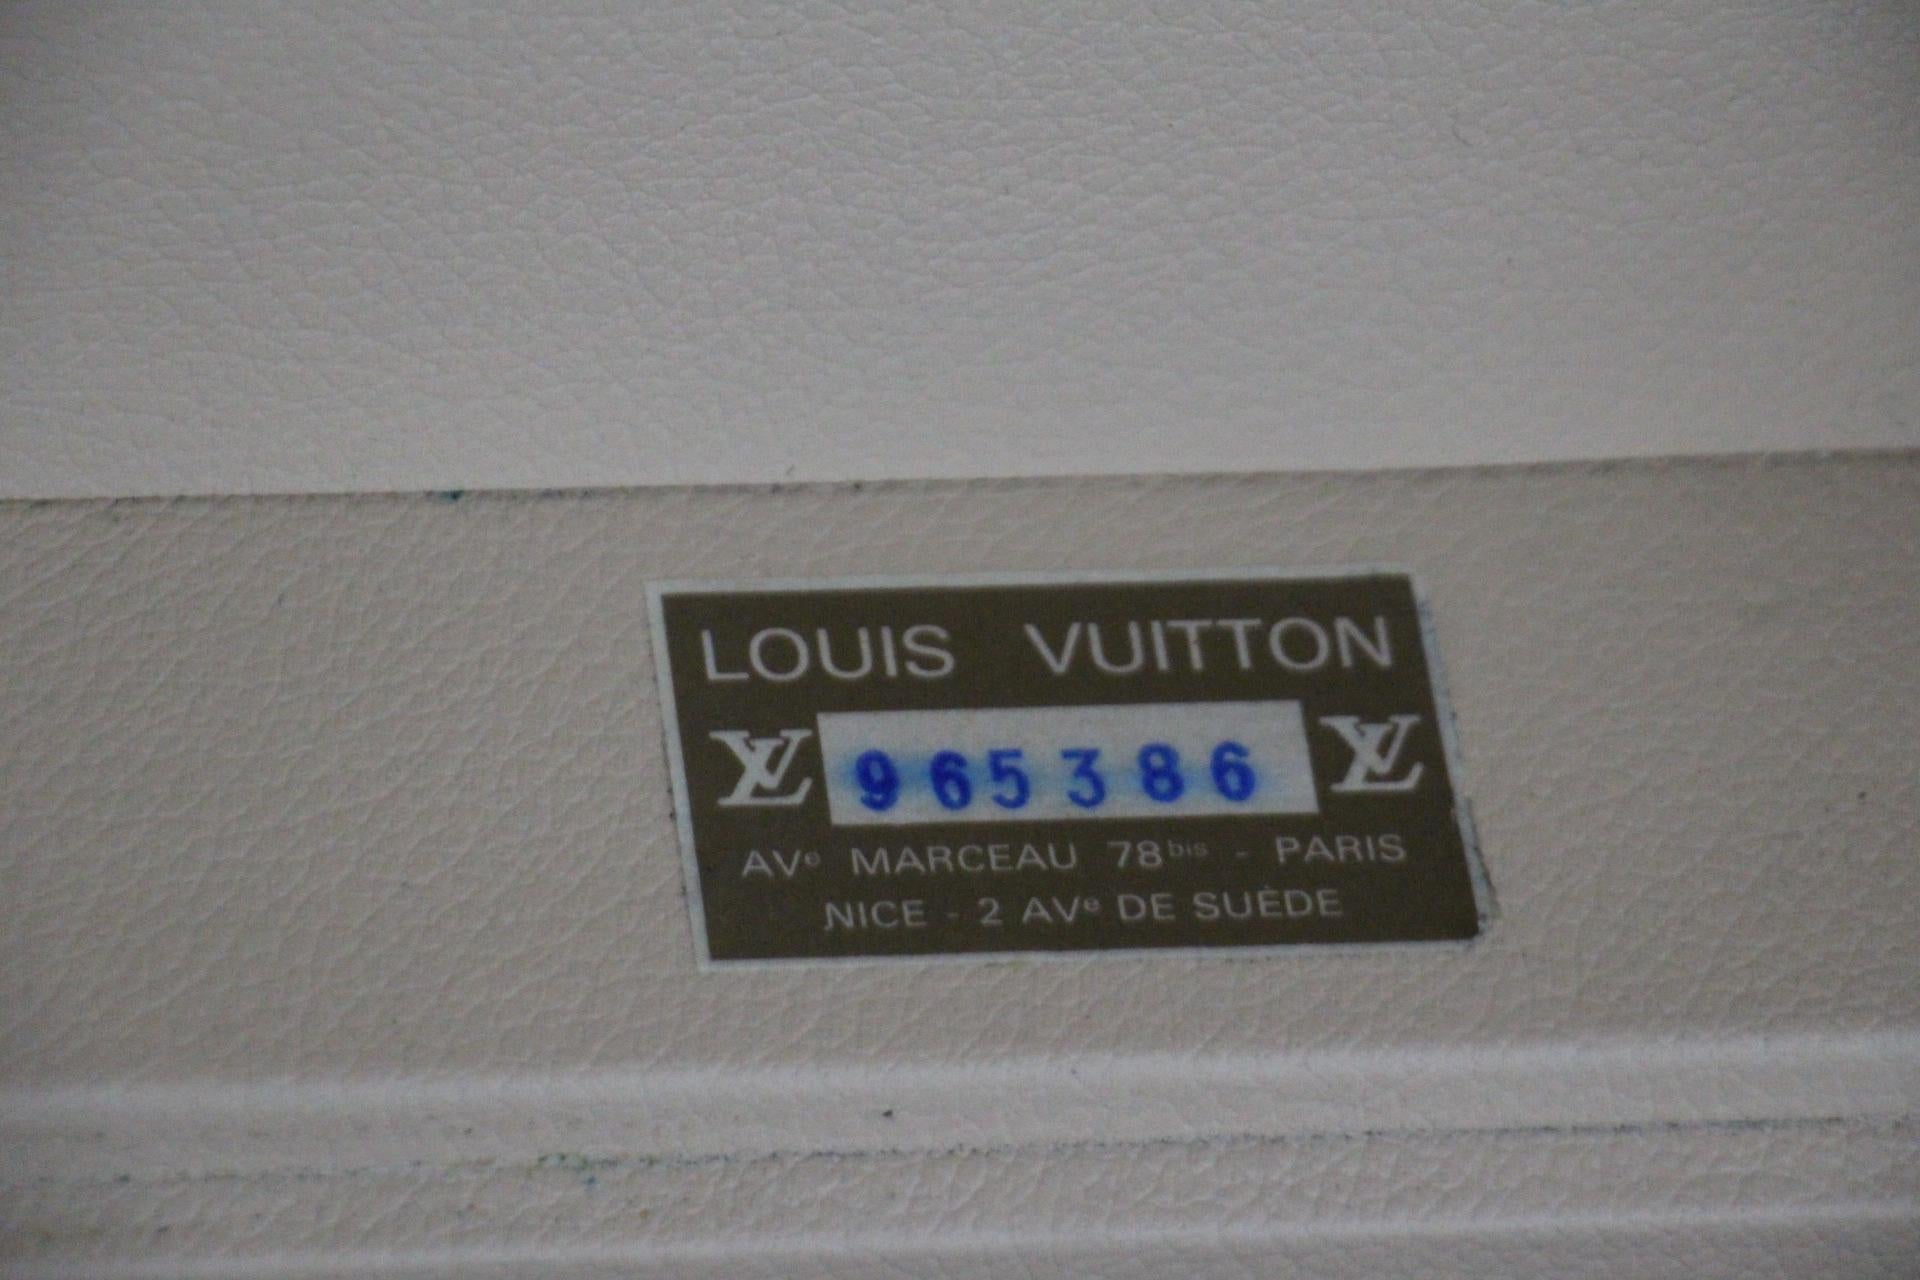  Louis Vuitton Suitcase, 55 Alzer Louis Vuitton Suitcase, 55 cm Vuitton Suitcase 15